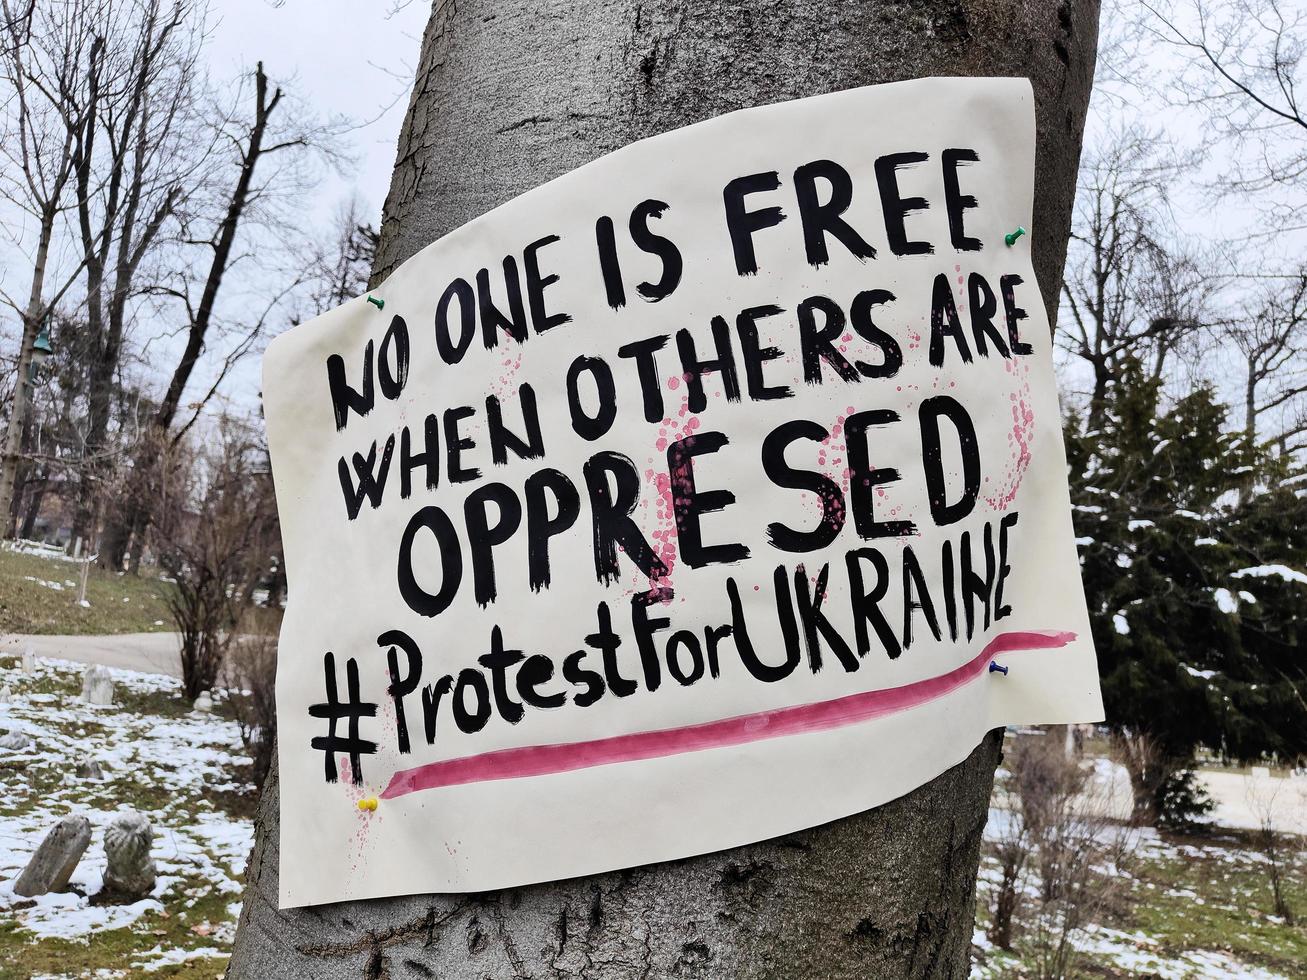 Sarajewo, geboren am 09.03.2022. ukraine protestiert zeichen. niemand ist frei, bis andere unterdrückt werden. Proteste gegen den Krieg. Stoppe den Krieg. Ukraine-Russland-Konflikt. Solidarität mit den Menschen in der Ukraine. foto